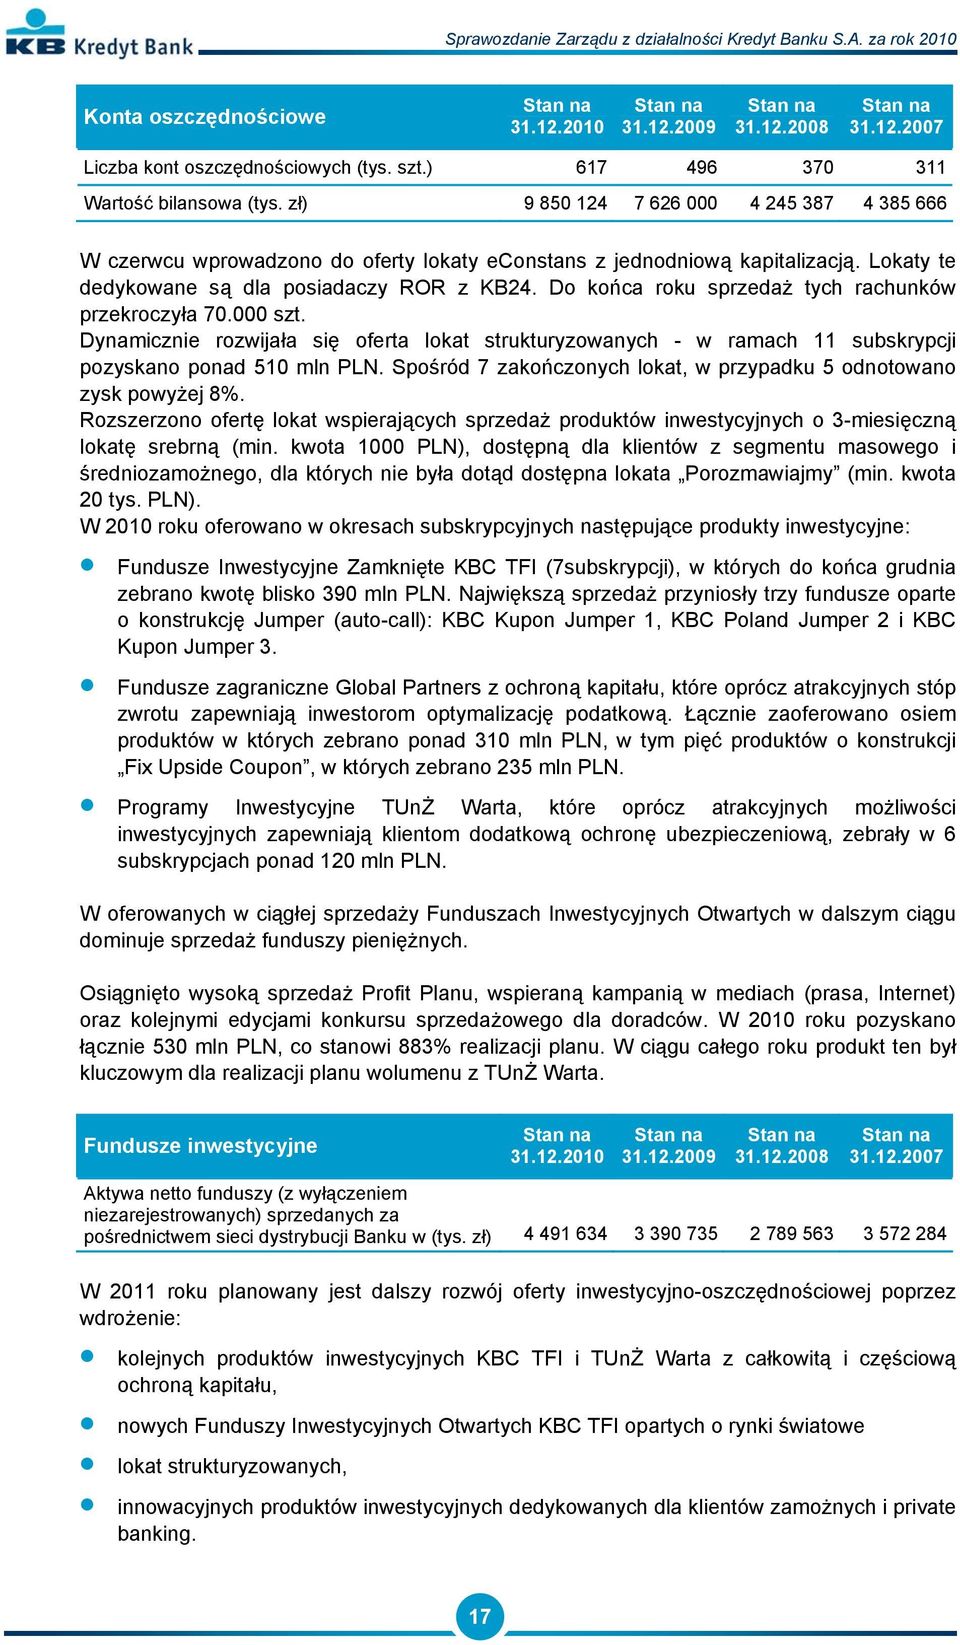 Do końca roku sprzedaż tych rachunków przekroczyła 70.000 szt. Dynamicznie rozwijała się oferta lokat strukturyzowanych - w ramach 11 subskrypcji pozyskano ponad 510 mln PLN.